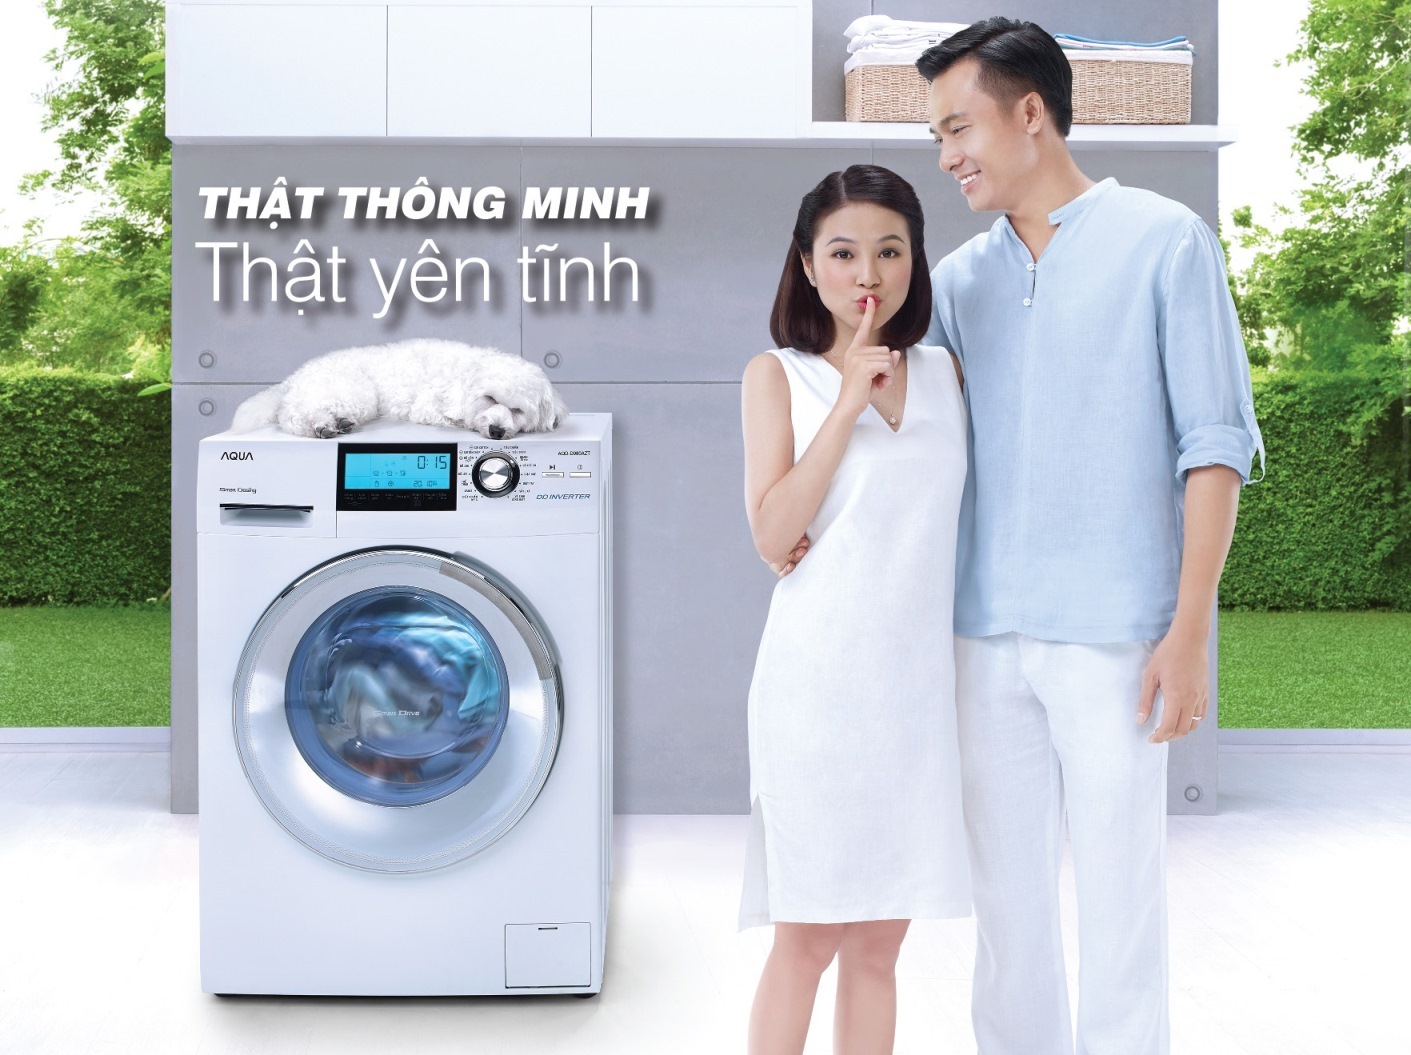 Máy giặt Aqua là sản phẩm đáng được lựa chọn sử dụng 